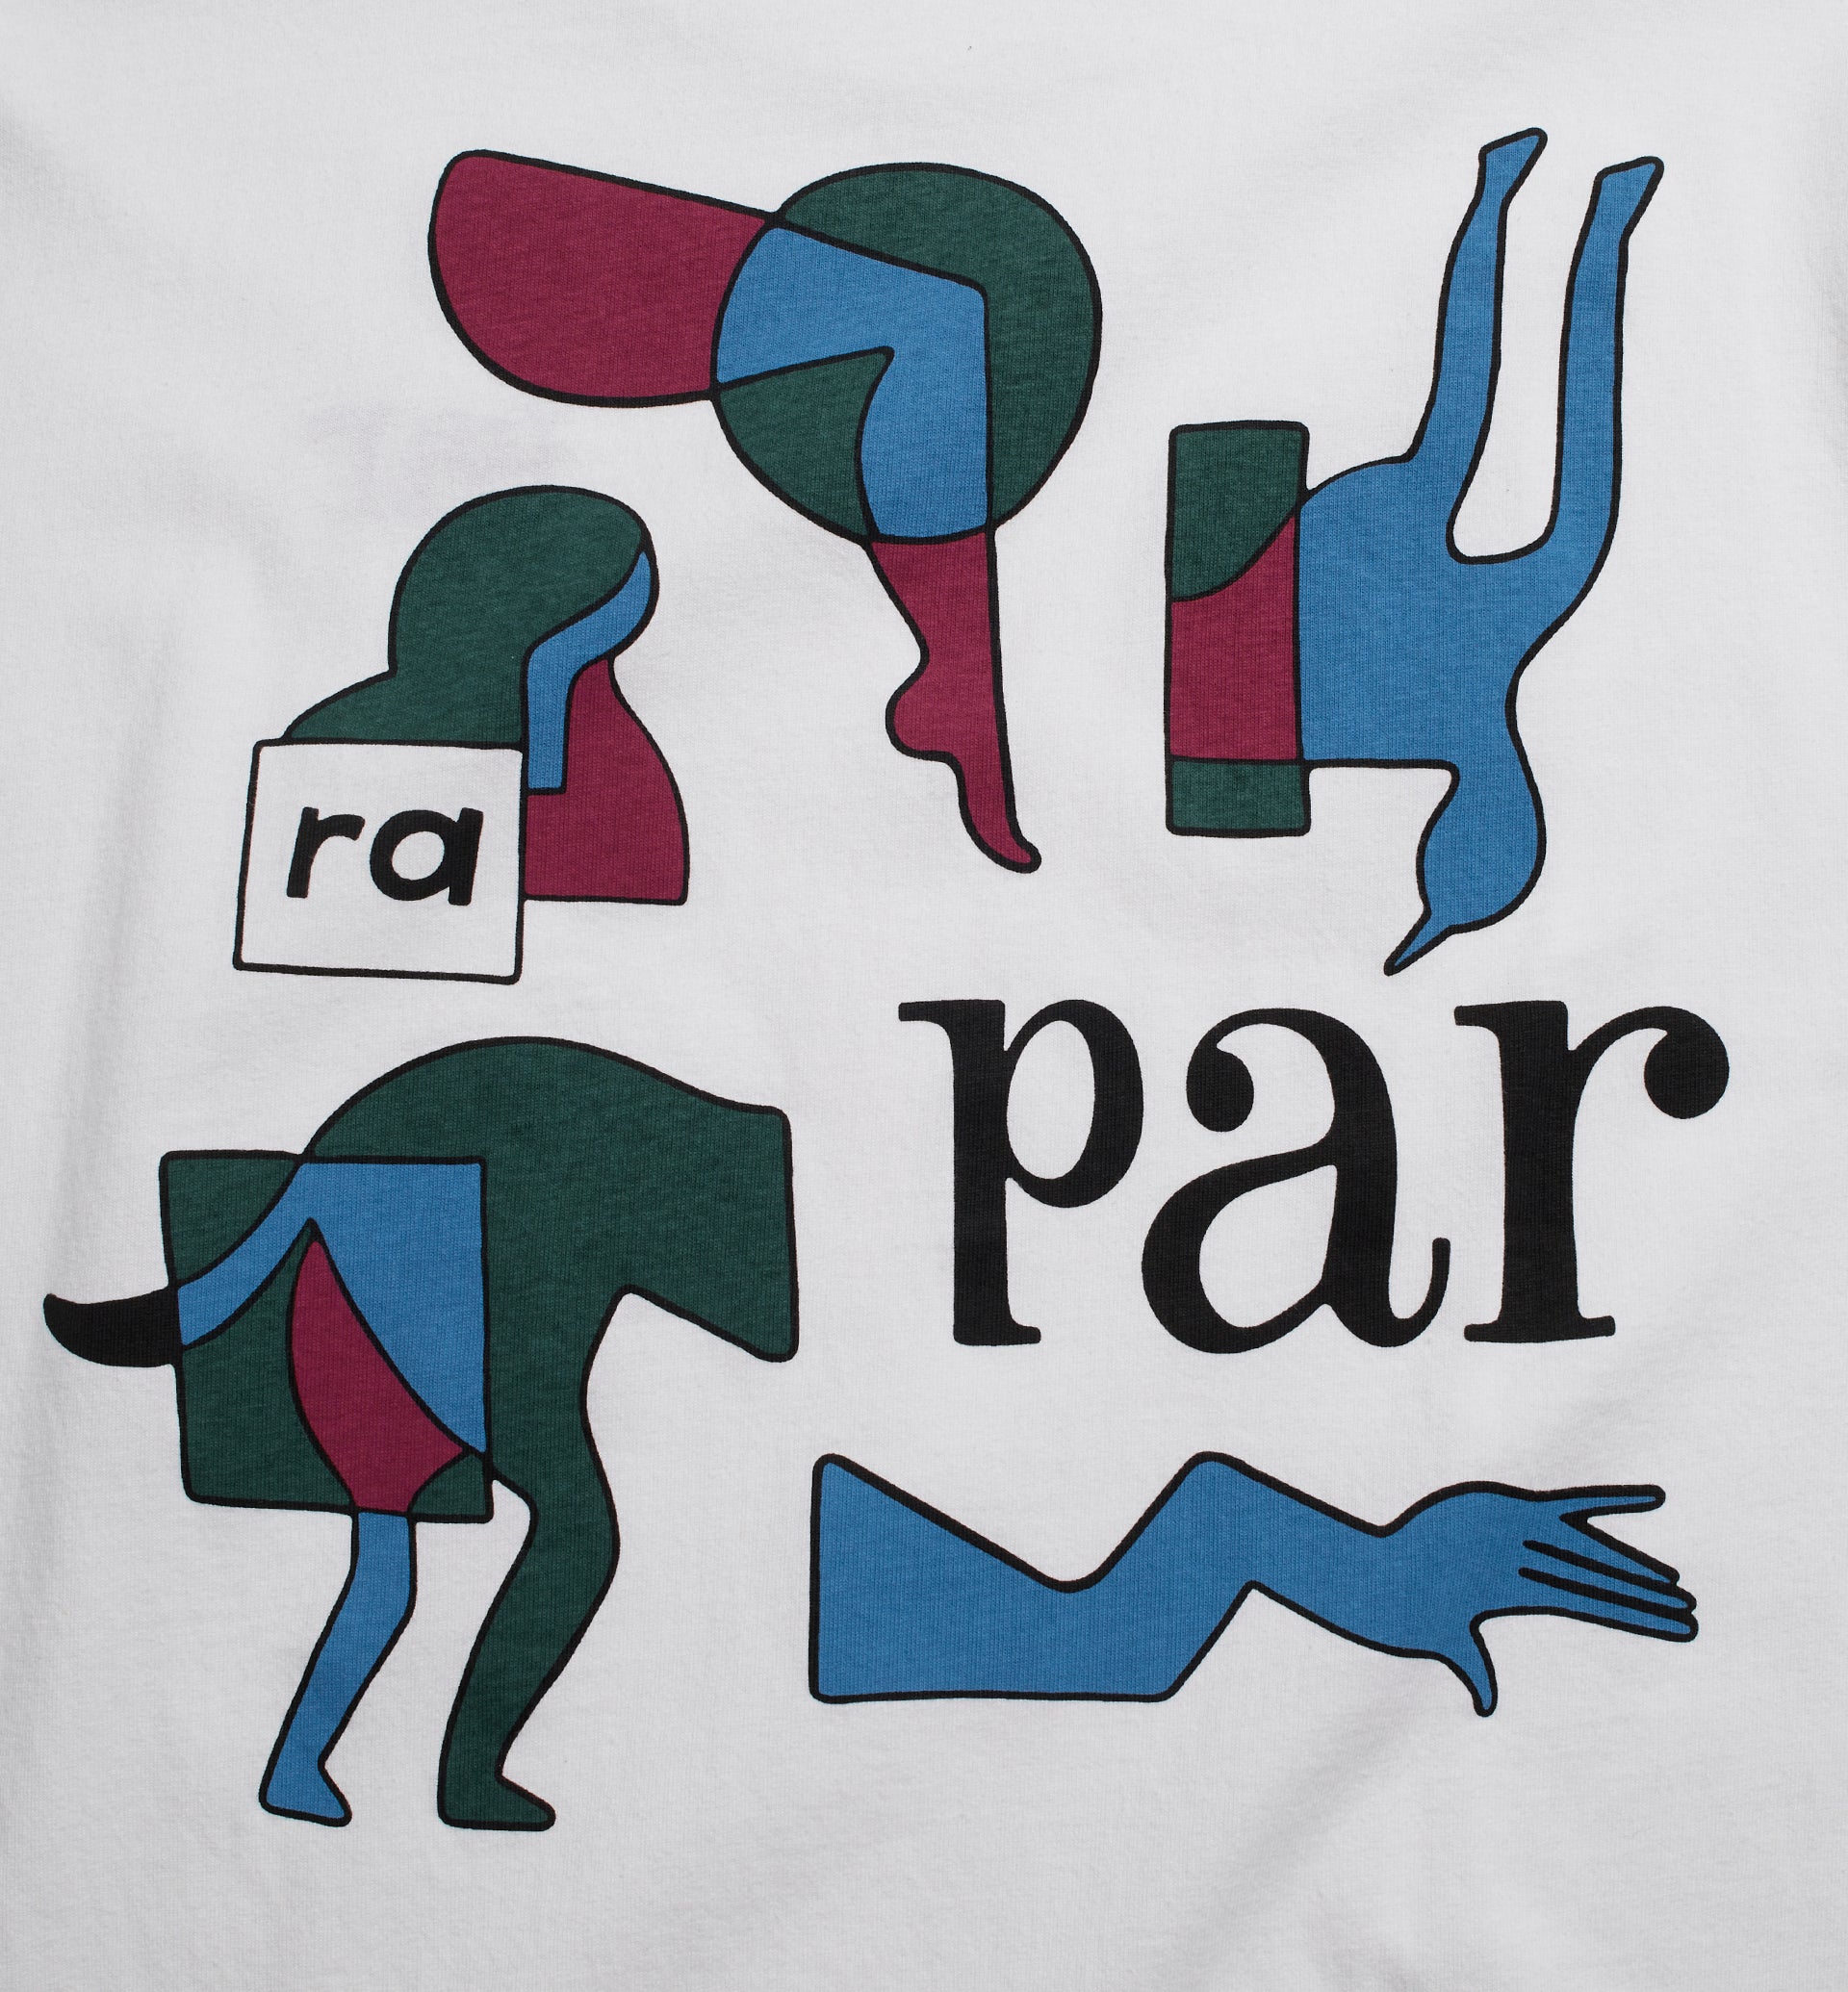 Parra - rug pull t-shirt